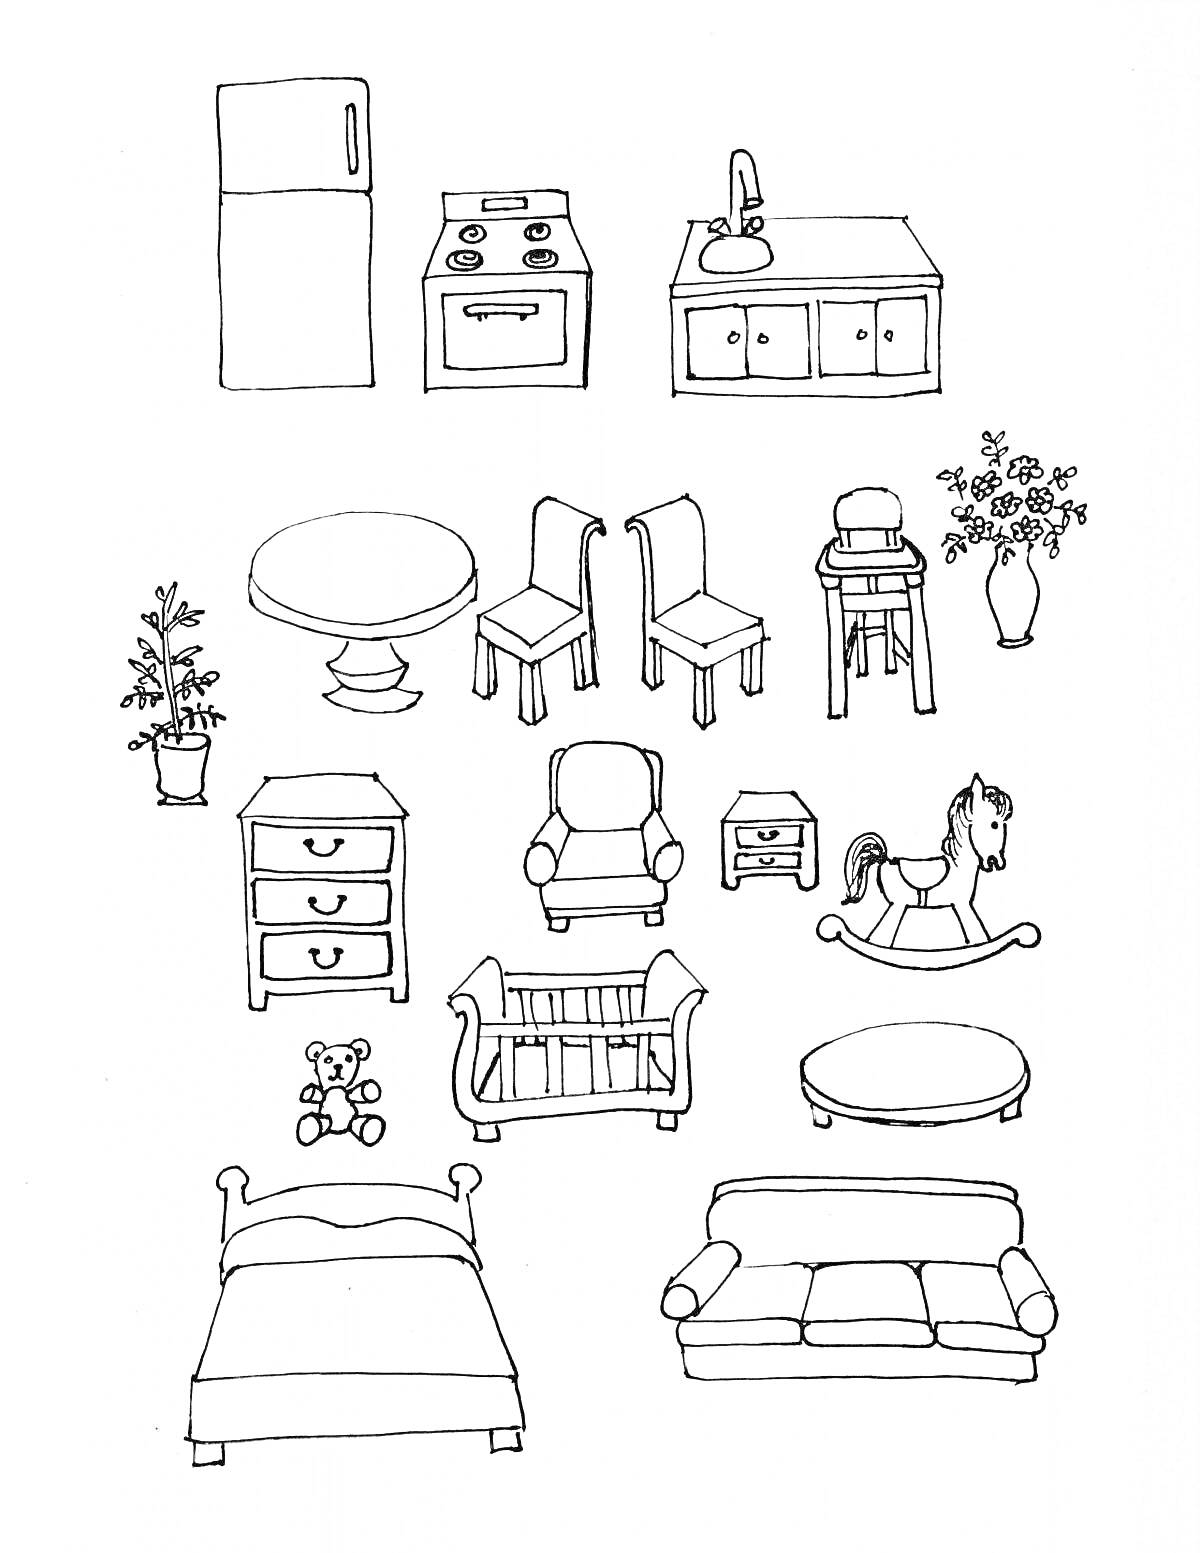 Раскраска Мебель и предметы интерьера: холодильник, плита, кухня с раковиной, круглый стол, два стула, высокий стул, ваза с цветами, растение в горшке, комод, кресло, кроватка, качалка-лошадка, мягкая игрушка, кровать, диван.